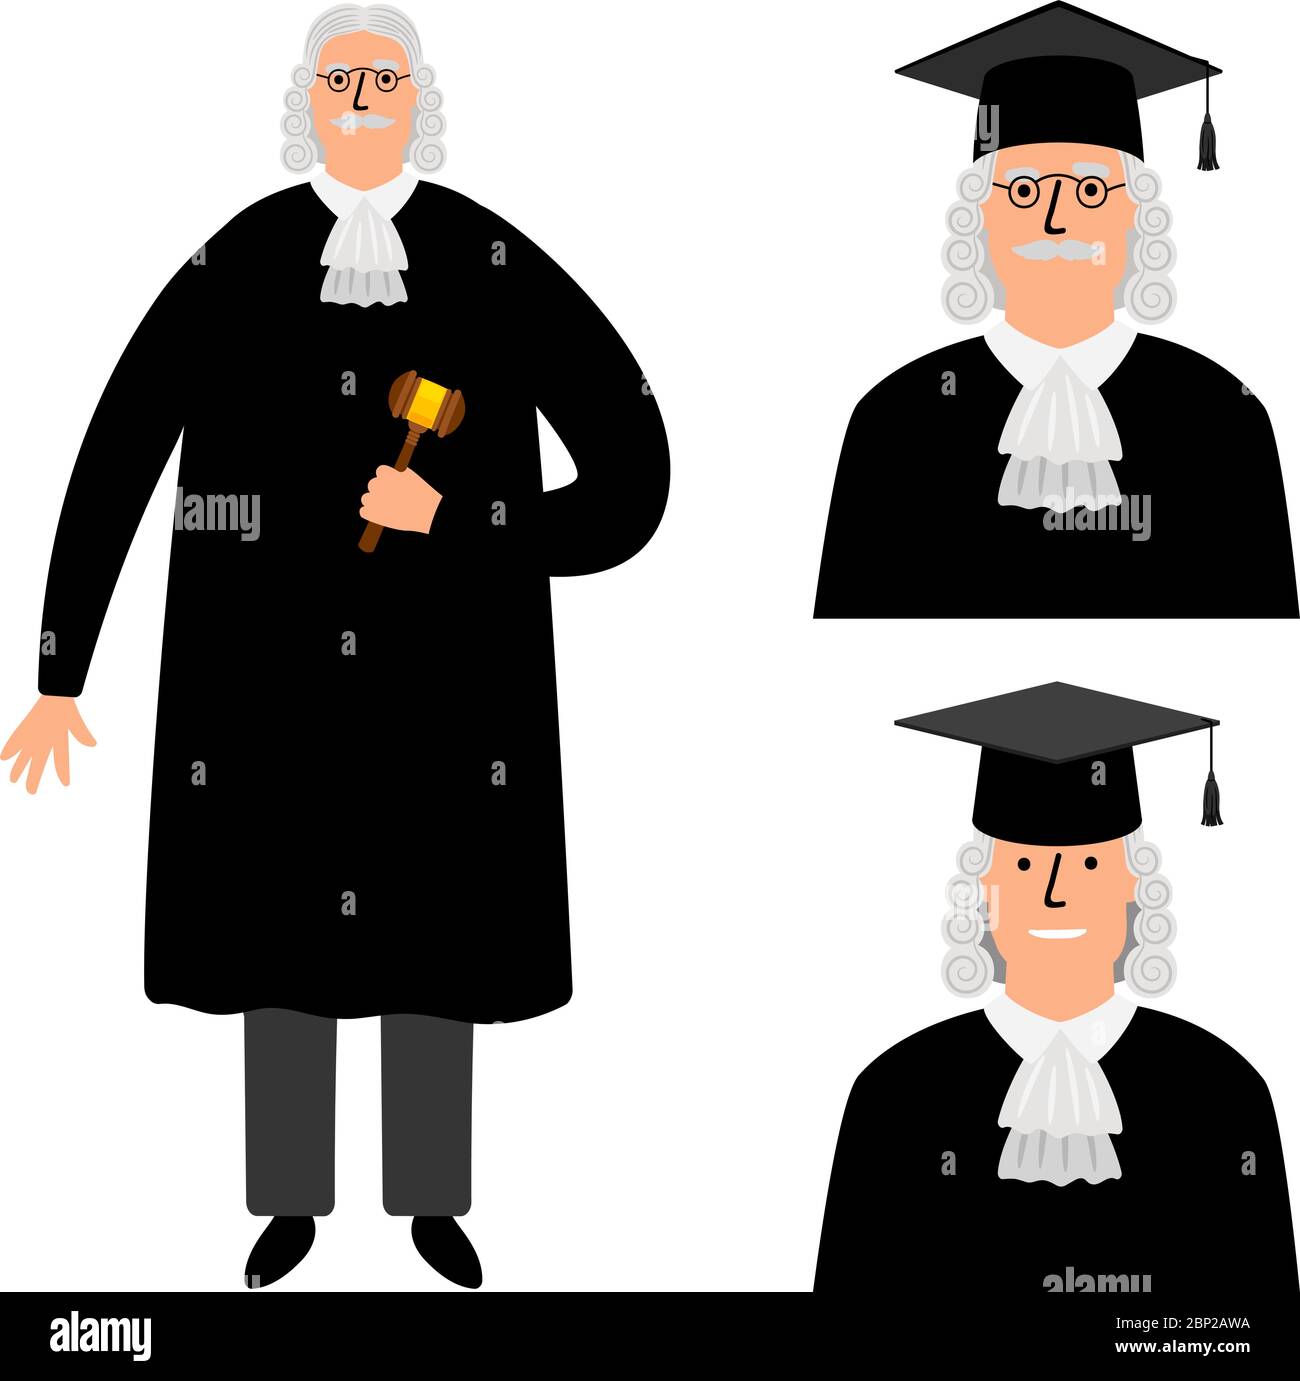 Richter. Caricature juge vecteur illustration, personnage de cour légale dans le manteau isolé sur fond blanc Illustration de Vecteur